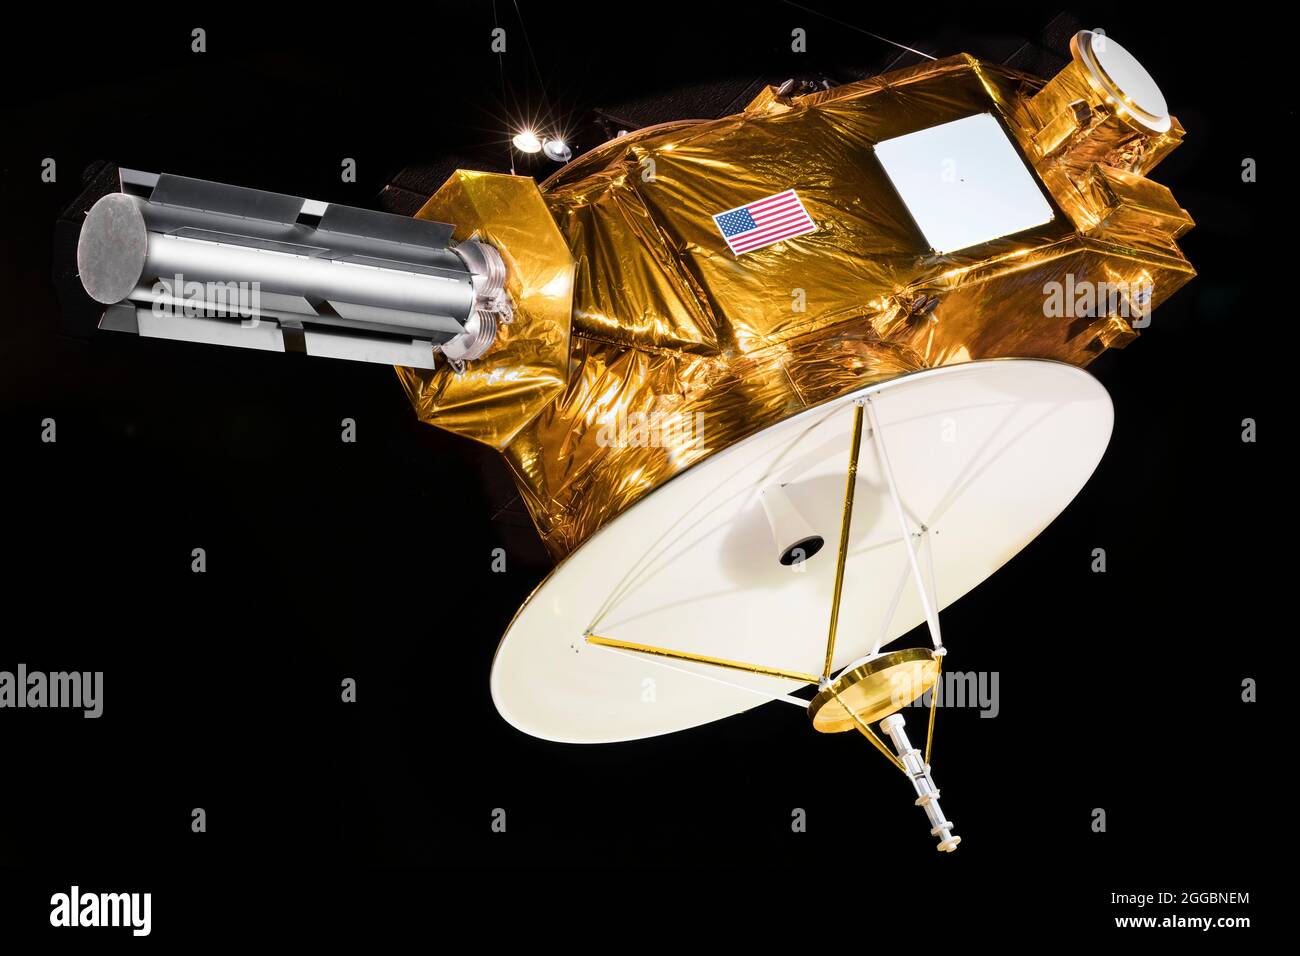 Vaisseau spatial, nouveaux Horizons, maquette, modèle, 2008. New Horizons a été le premier vaisseau spatial à visiter Pluton et la ceinture de Kuiper dans le système solaire extérieur. Il a été lancé à bord d'une fusée Atlas V à partir de la base aérienne de Cape Canaveral, en Floride, le 19 janvier 2006, et a effectué un vol Jupiter 13 mois plus tard pour obtenir une accélération supplémentaire. Le 14 juillet 14 2015, New Horizons a fait son approche la plus proche de Pluton. Le vaisseau spatial d'une demi-tonne contenait des instruments scientifiques pour cartographier la géologie de surface et la composition de Pluton et de ses trois lunes, étudier l'atmosphère de Pluton, mesurer le vent solaire et évaluer l'Inte Banque D'Images